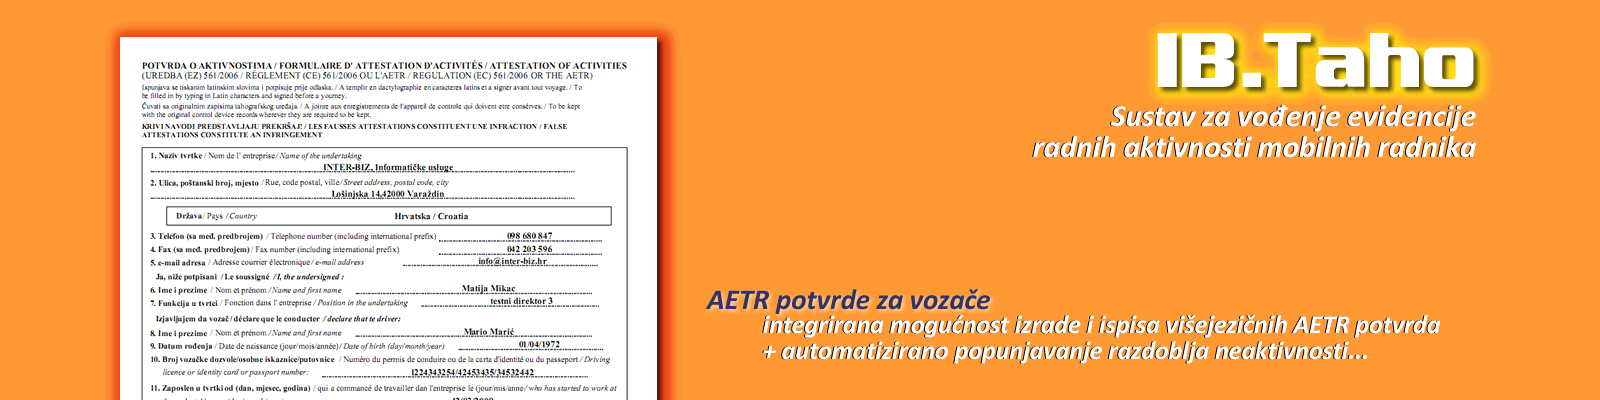 Potvrde o aktivnostima za vozače (AETR potvrda)